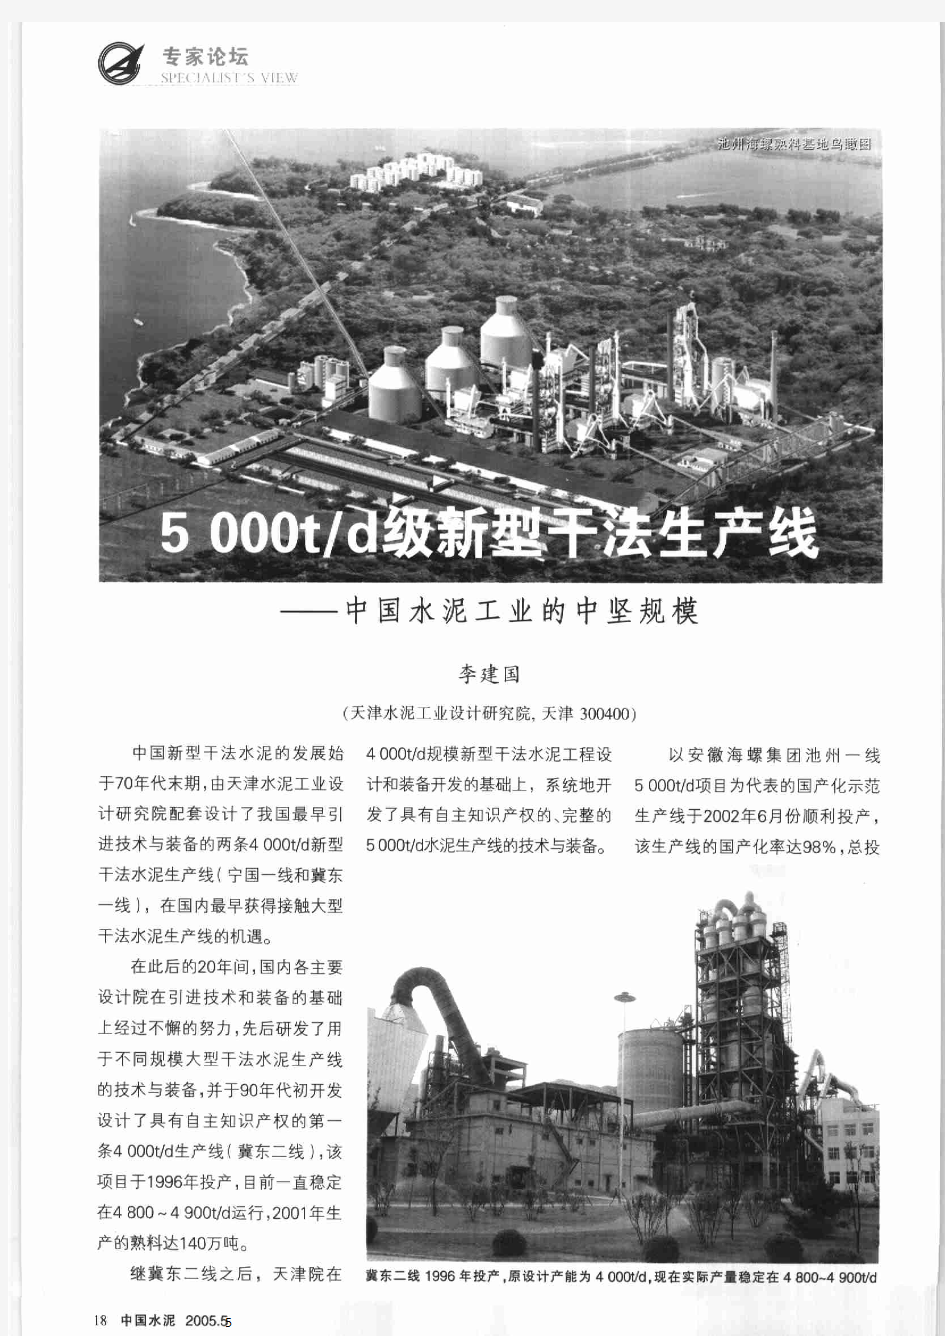 5000t／d级新型干法生产线——中国水泥工业的中坚规模